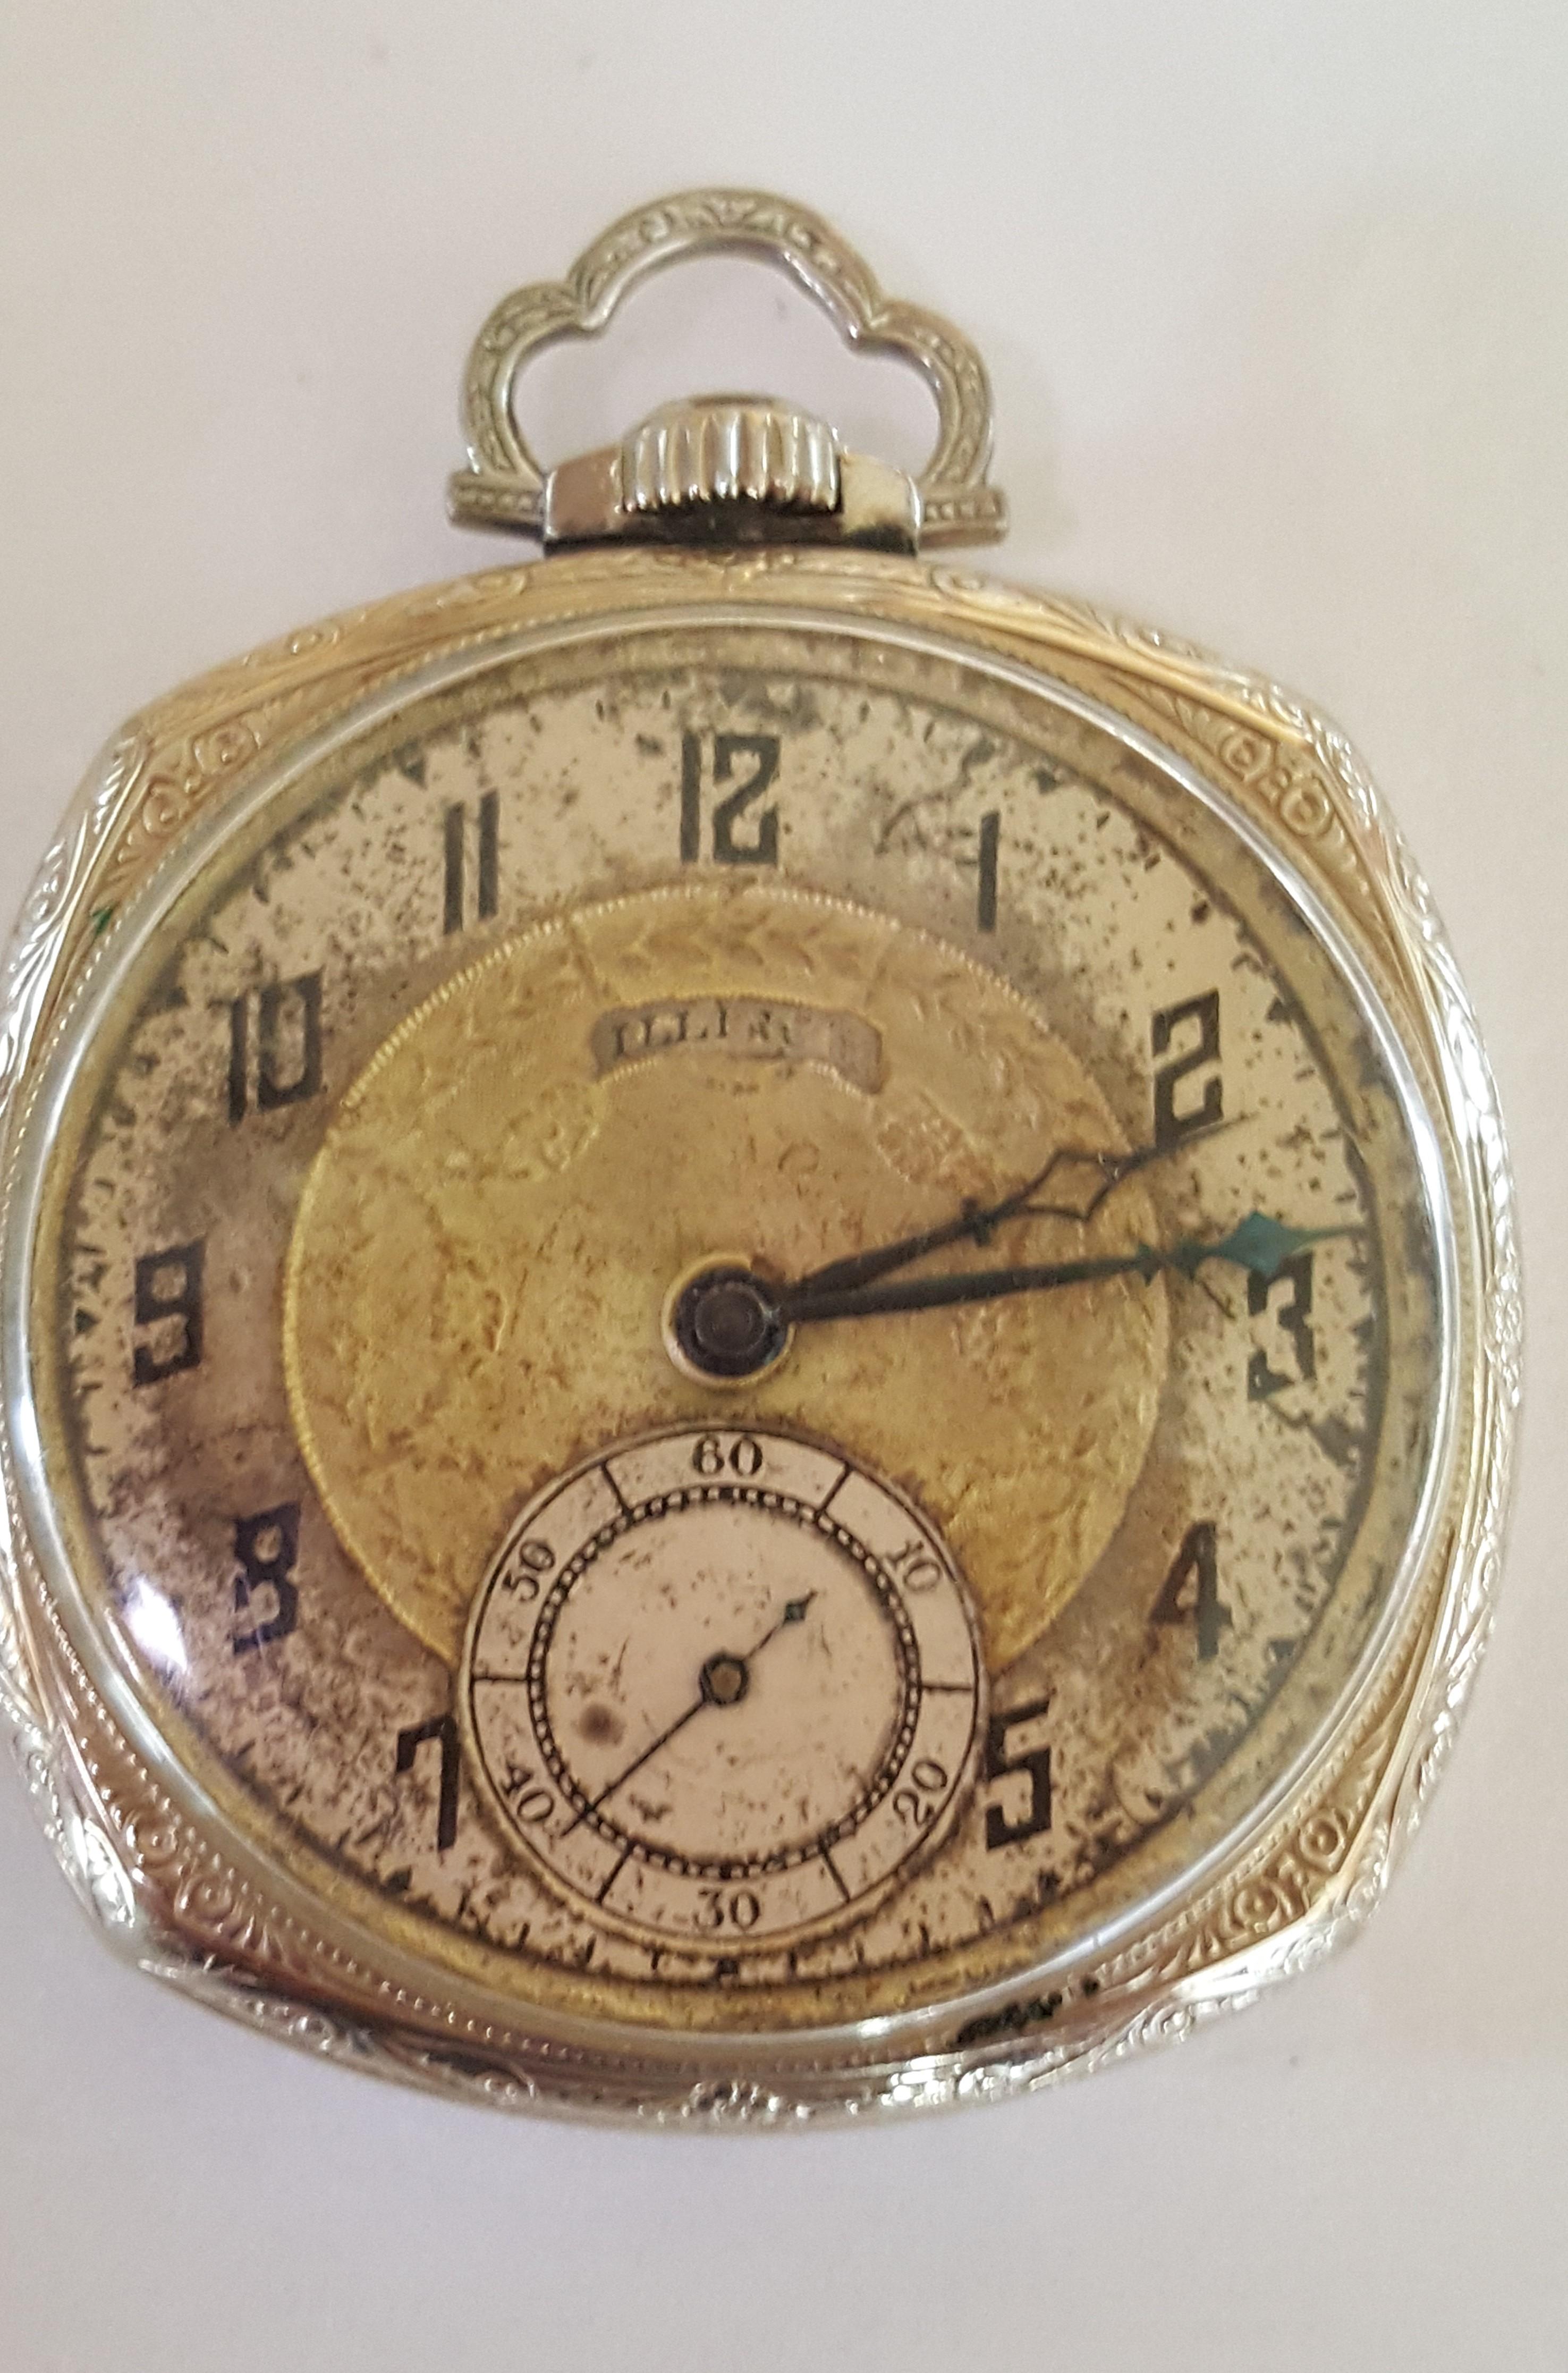 1923 illinois pocket watch value